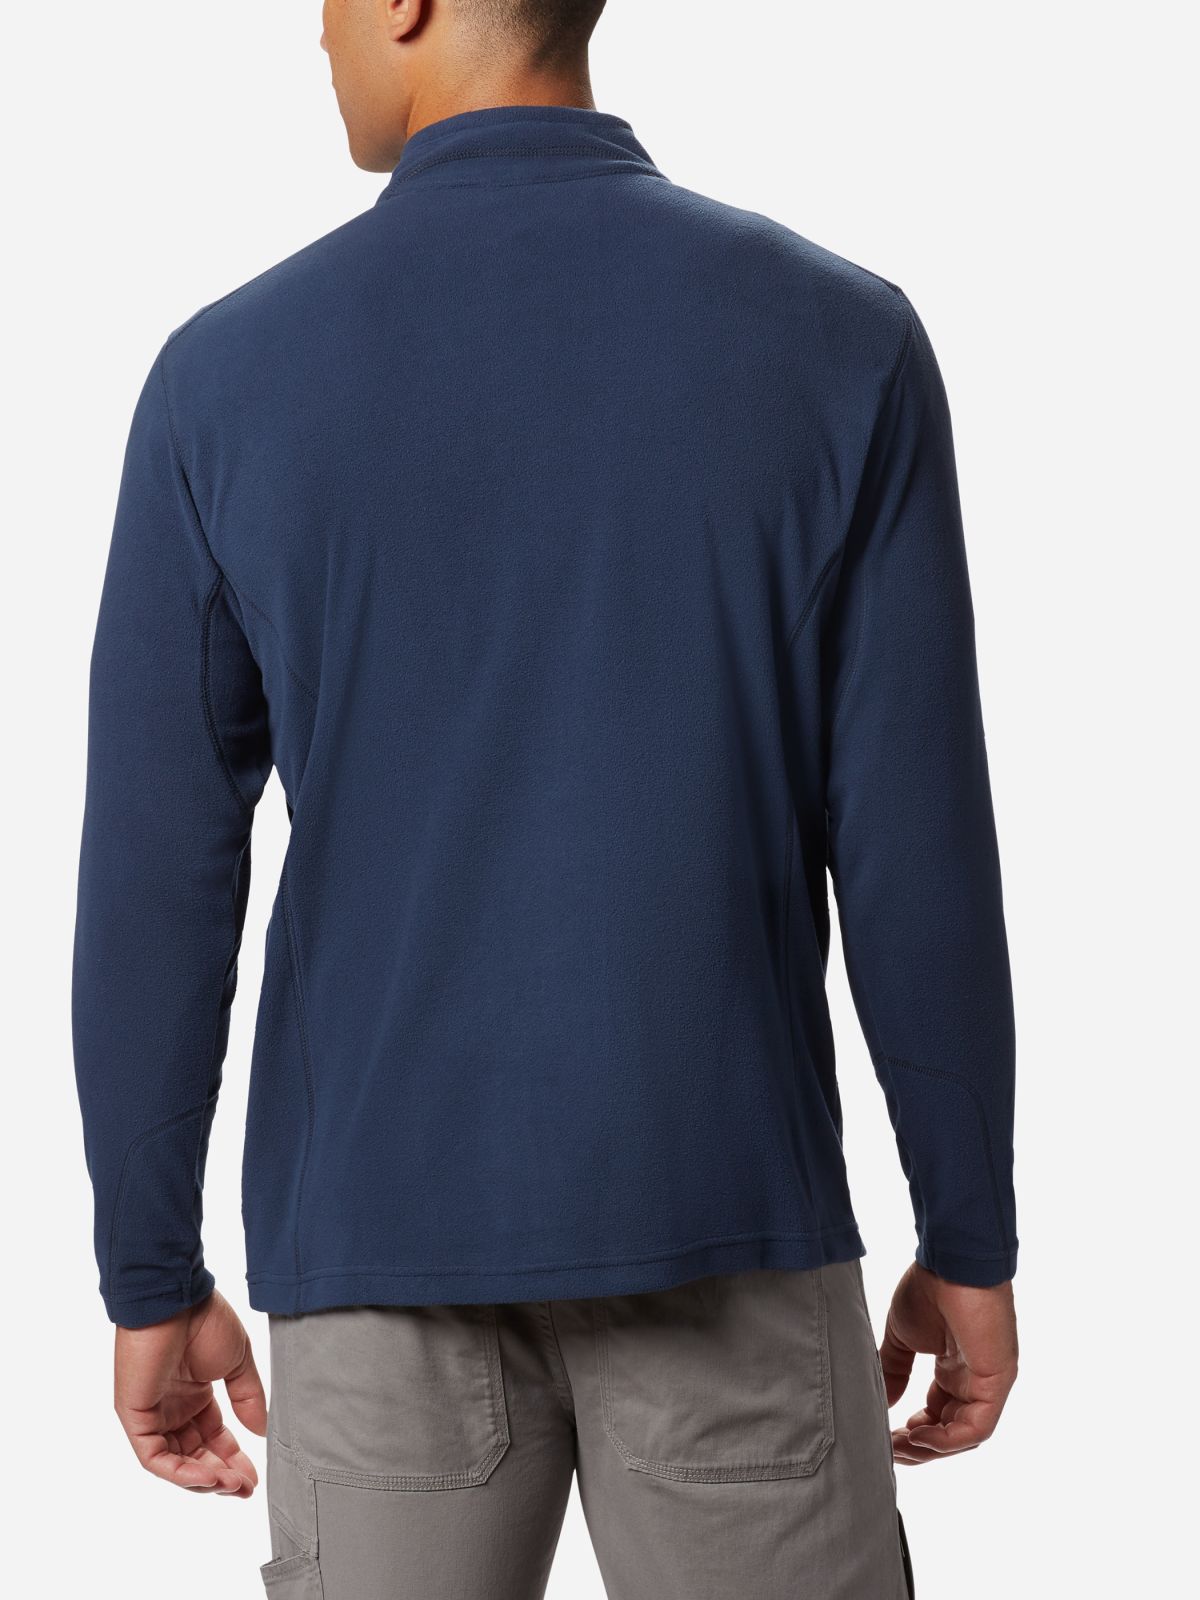  חולצת מיקרופליז Klamath Range II Half Zip של COLUMBIA